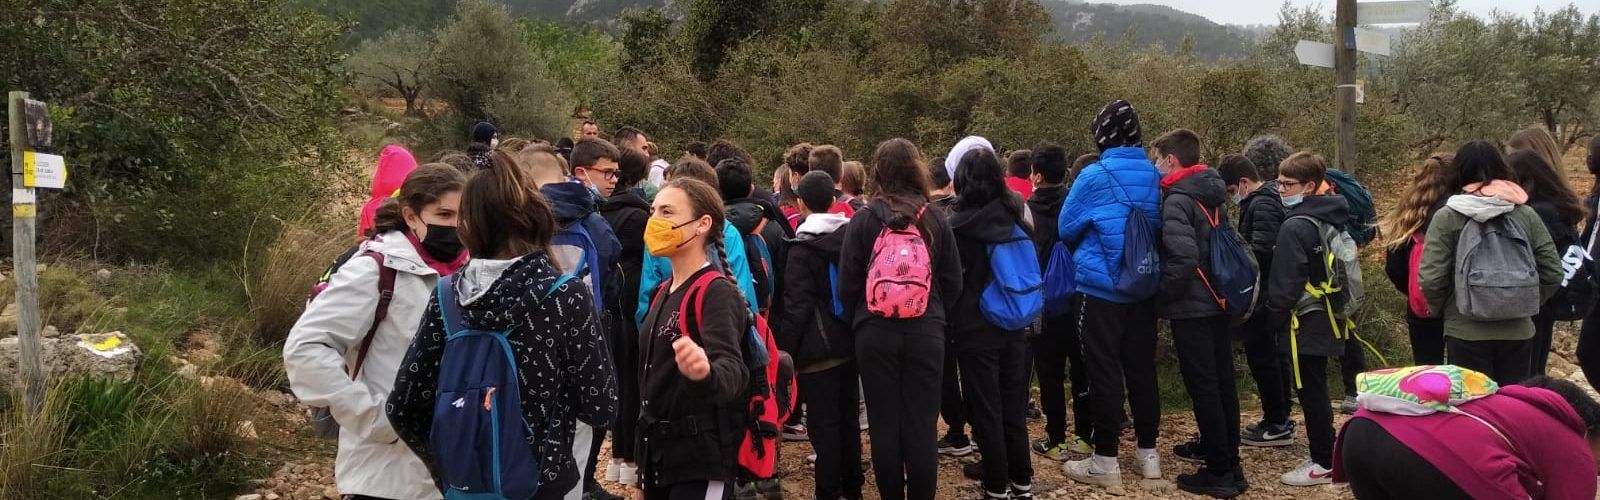 Eixida senderista a la Serra d’Irta amb l’alumnat de 1r ESO de l’IES Leopoldo Querol